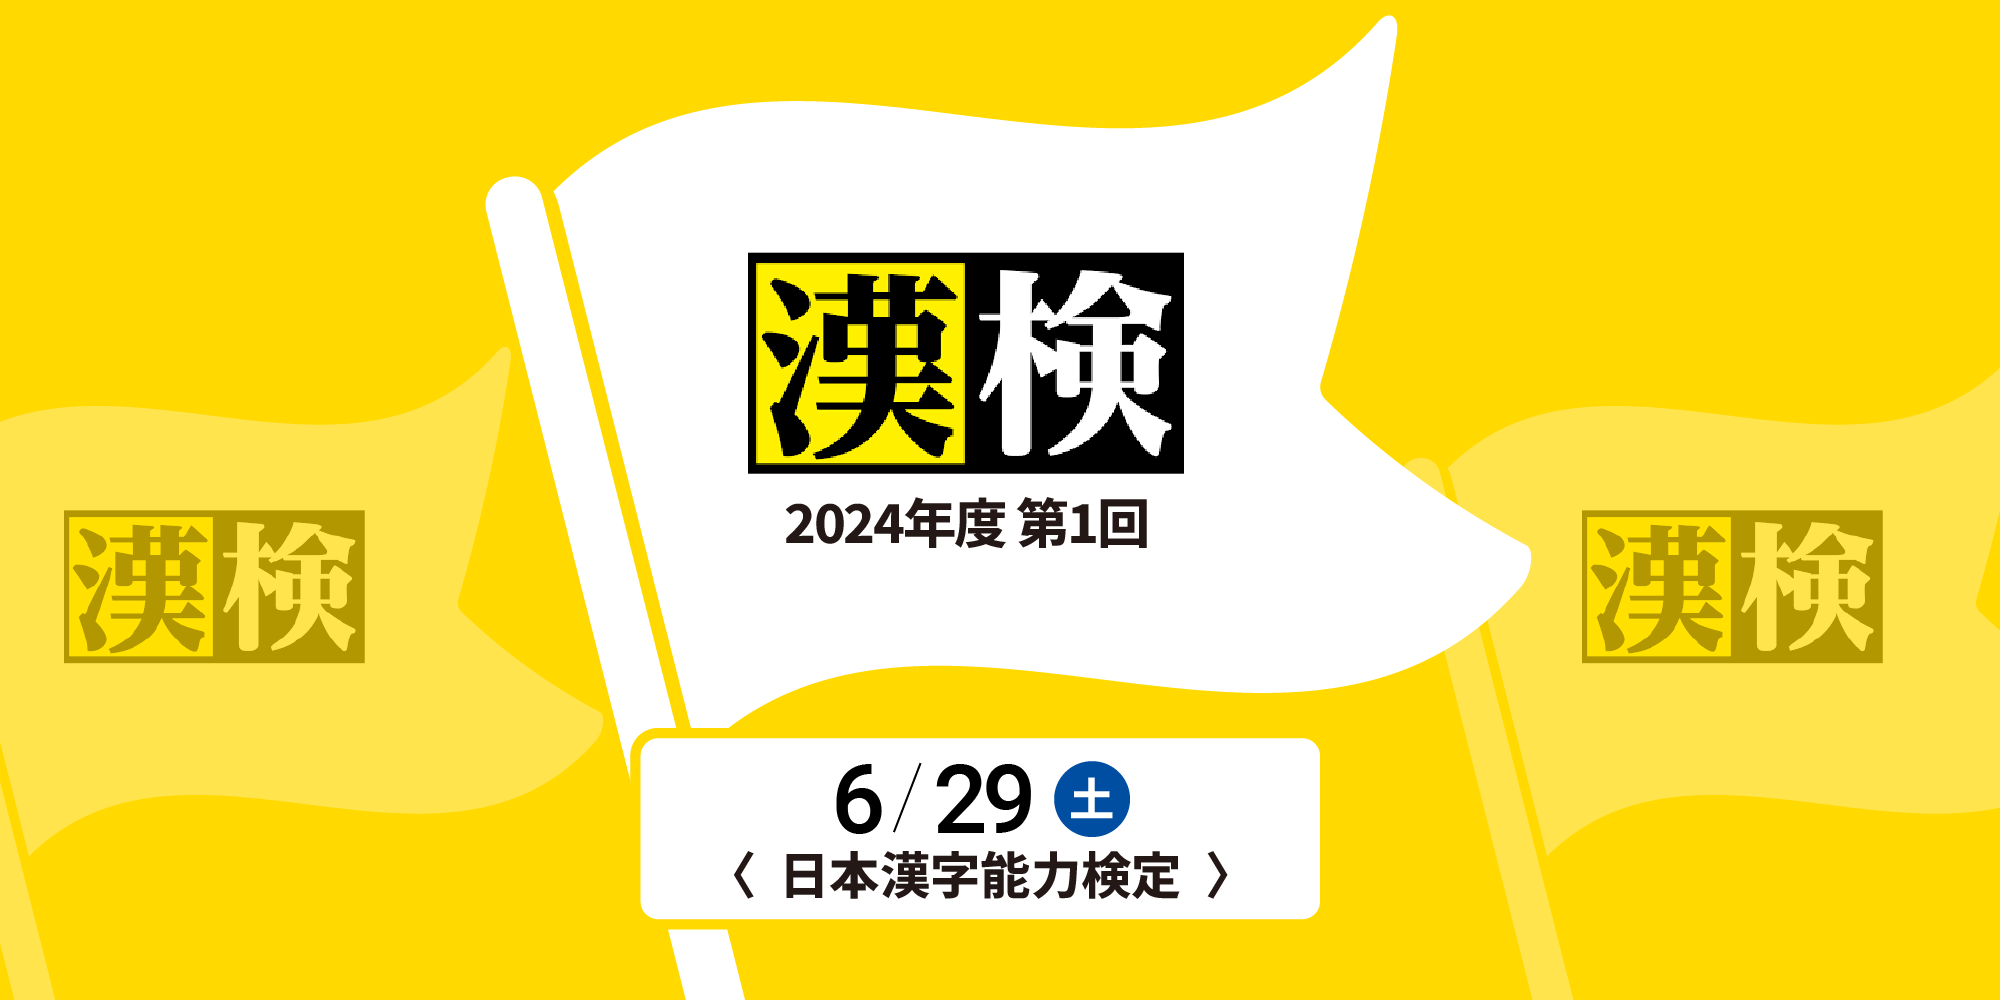 2024年度第1回漢検開催のお知らせ